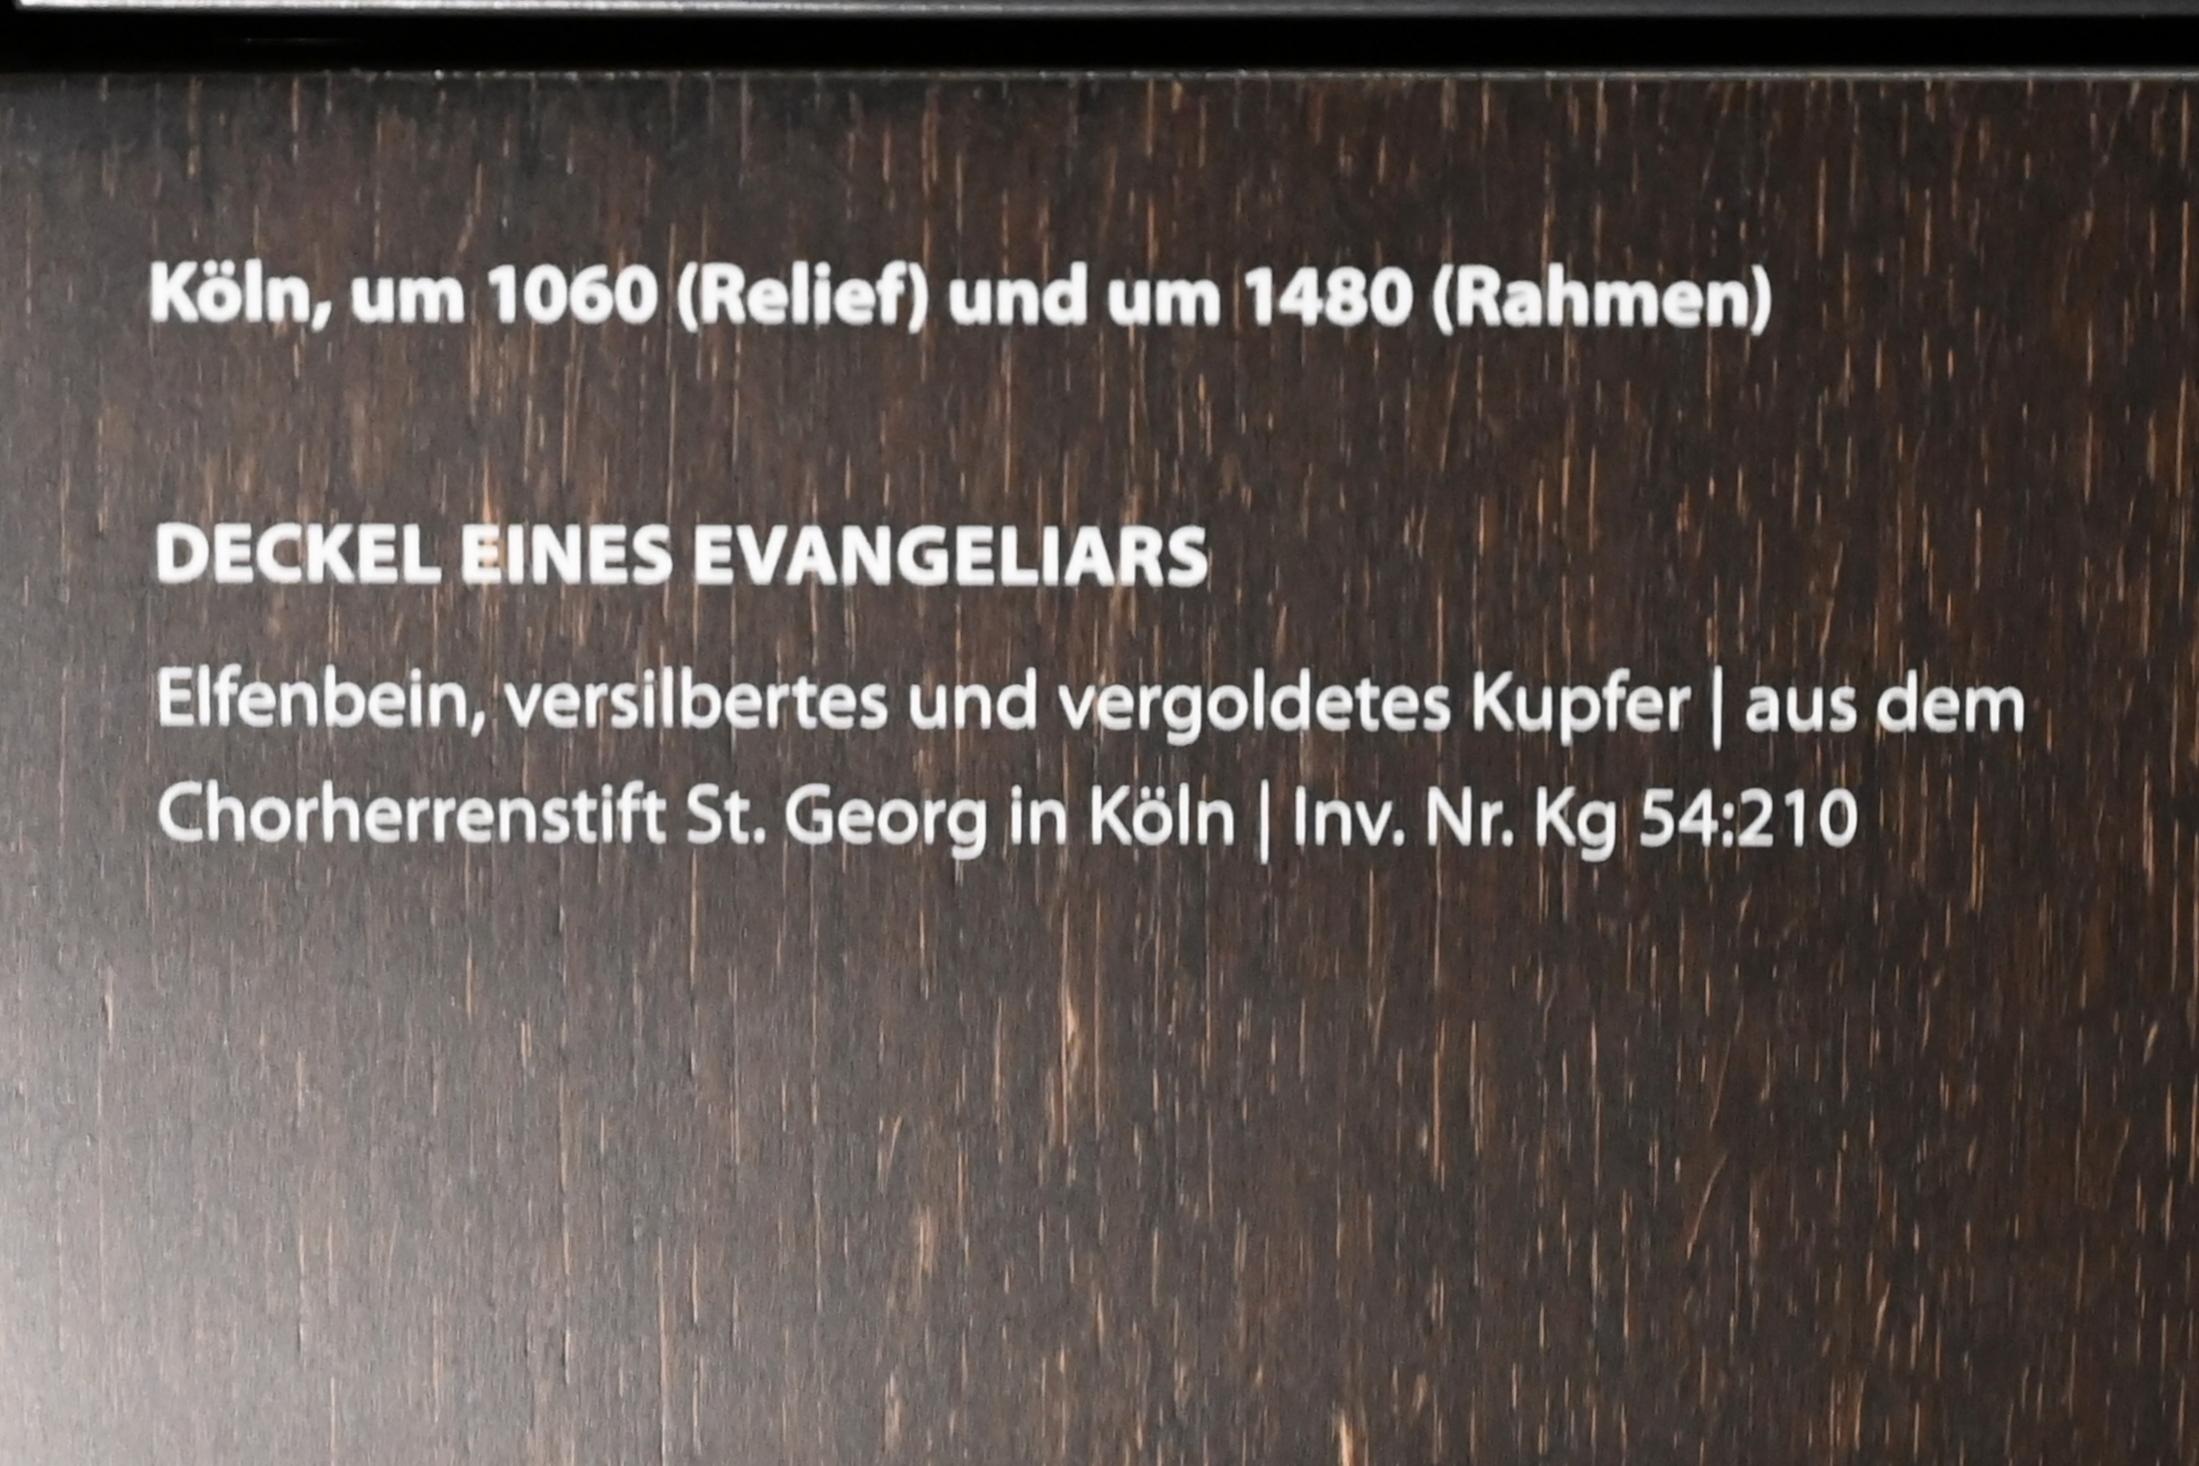 Deckel eines Evangeliars, Köln, ehem. Chorherrenstift St. Georg, jetzt Darmstadt, Hessisches Landesmuseum, Kirchliche Schatzkammer, um 1060, Bild 2/2